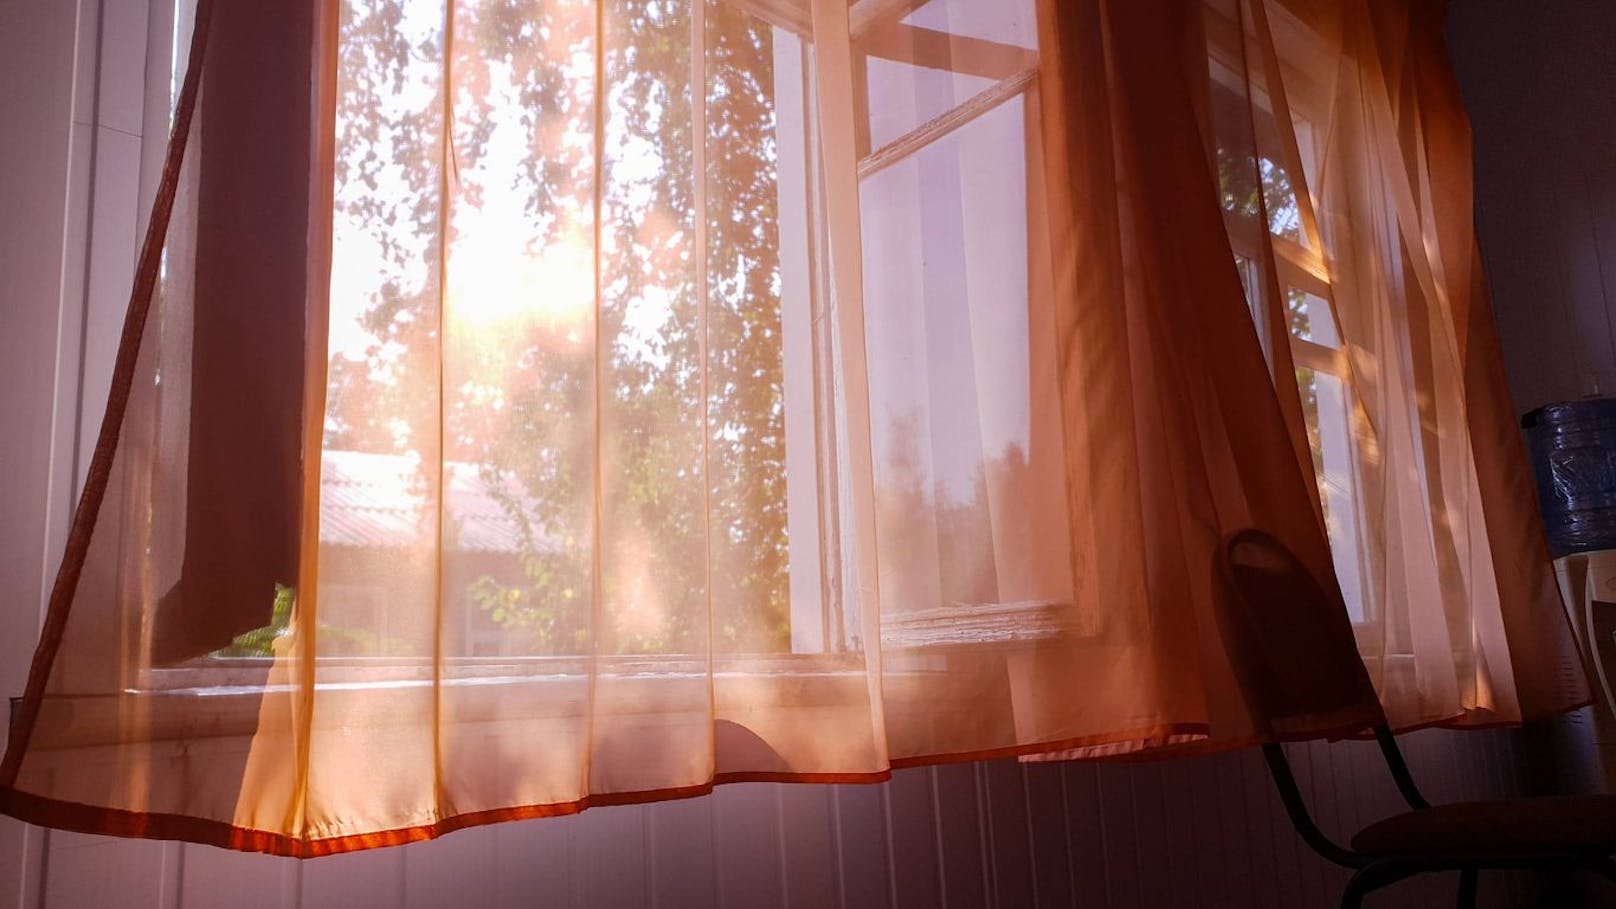 Am idealsten ist es, wenn du Morgens oder Abends deine Fenster öffnest. Zu diesen Zeiten ist es besonders kühl und du lässt keine stickige Luft hinein.